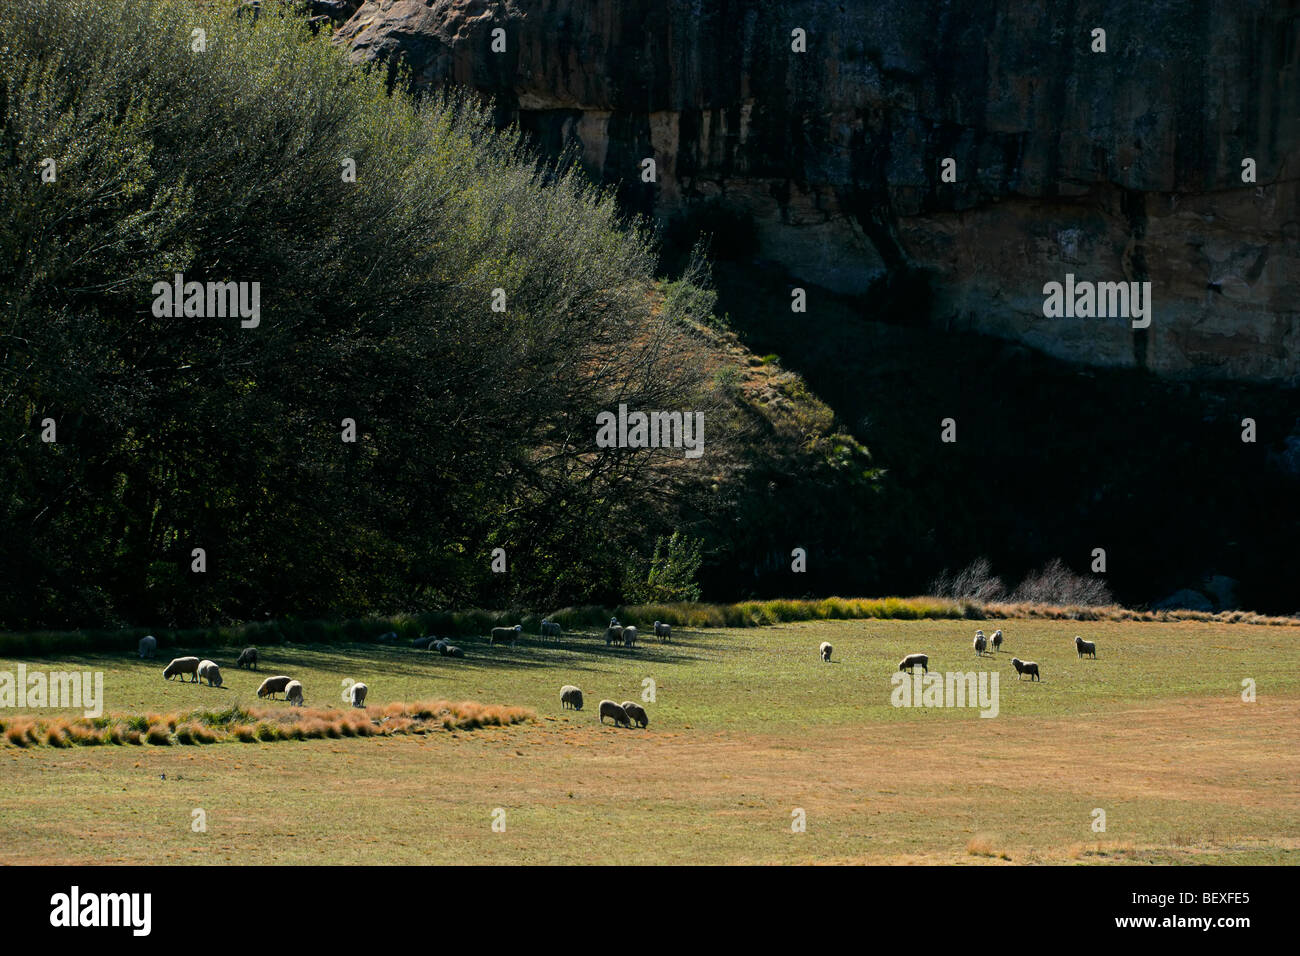 Paesaggio rurale con alberi, pascoli e pecore al pascolo, la mattina presto, Sud Africa Foto Stock